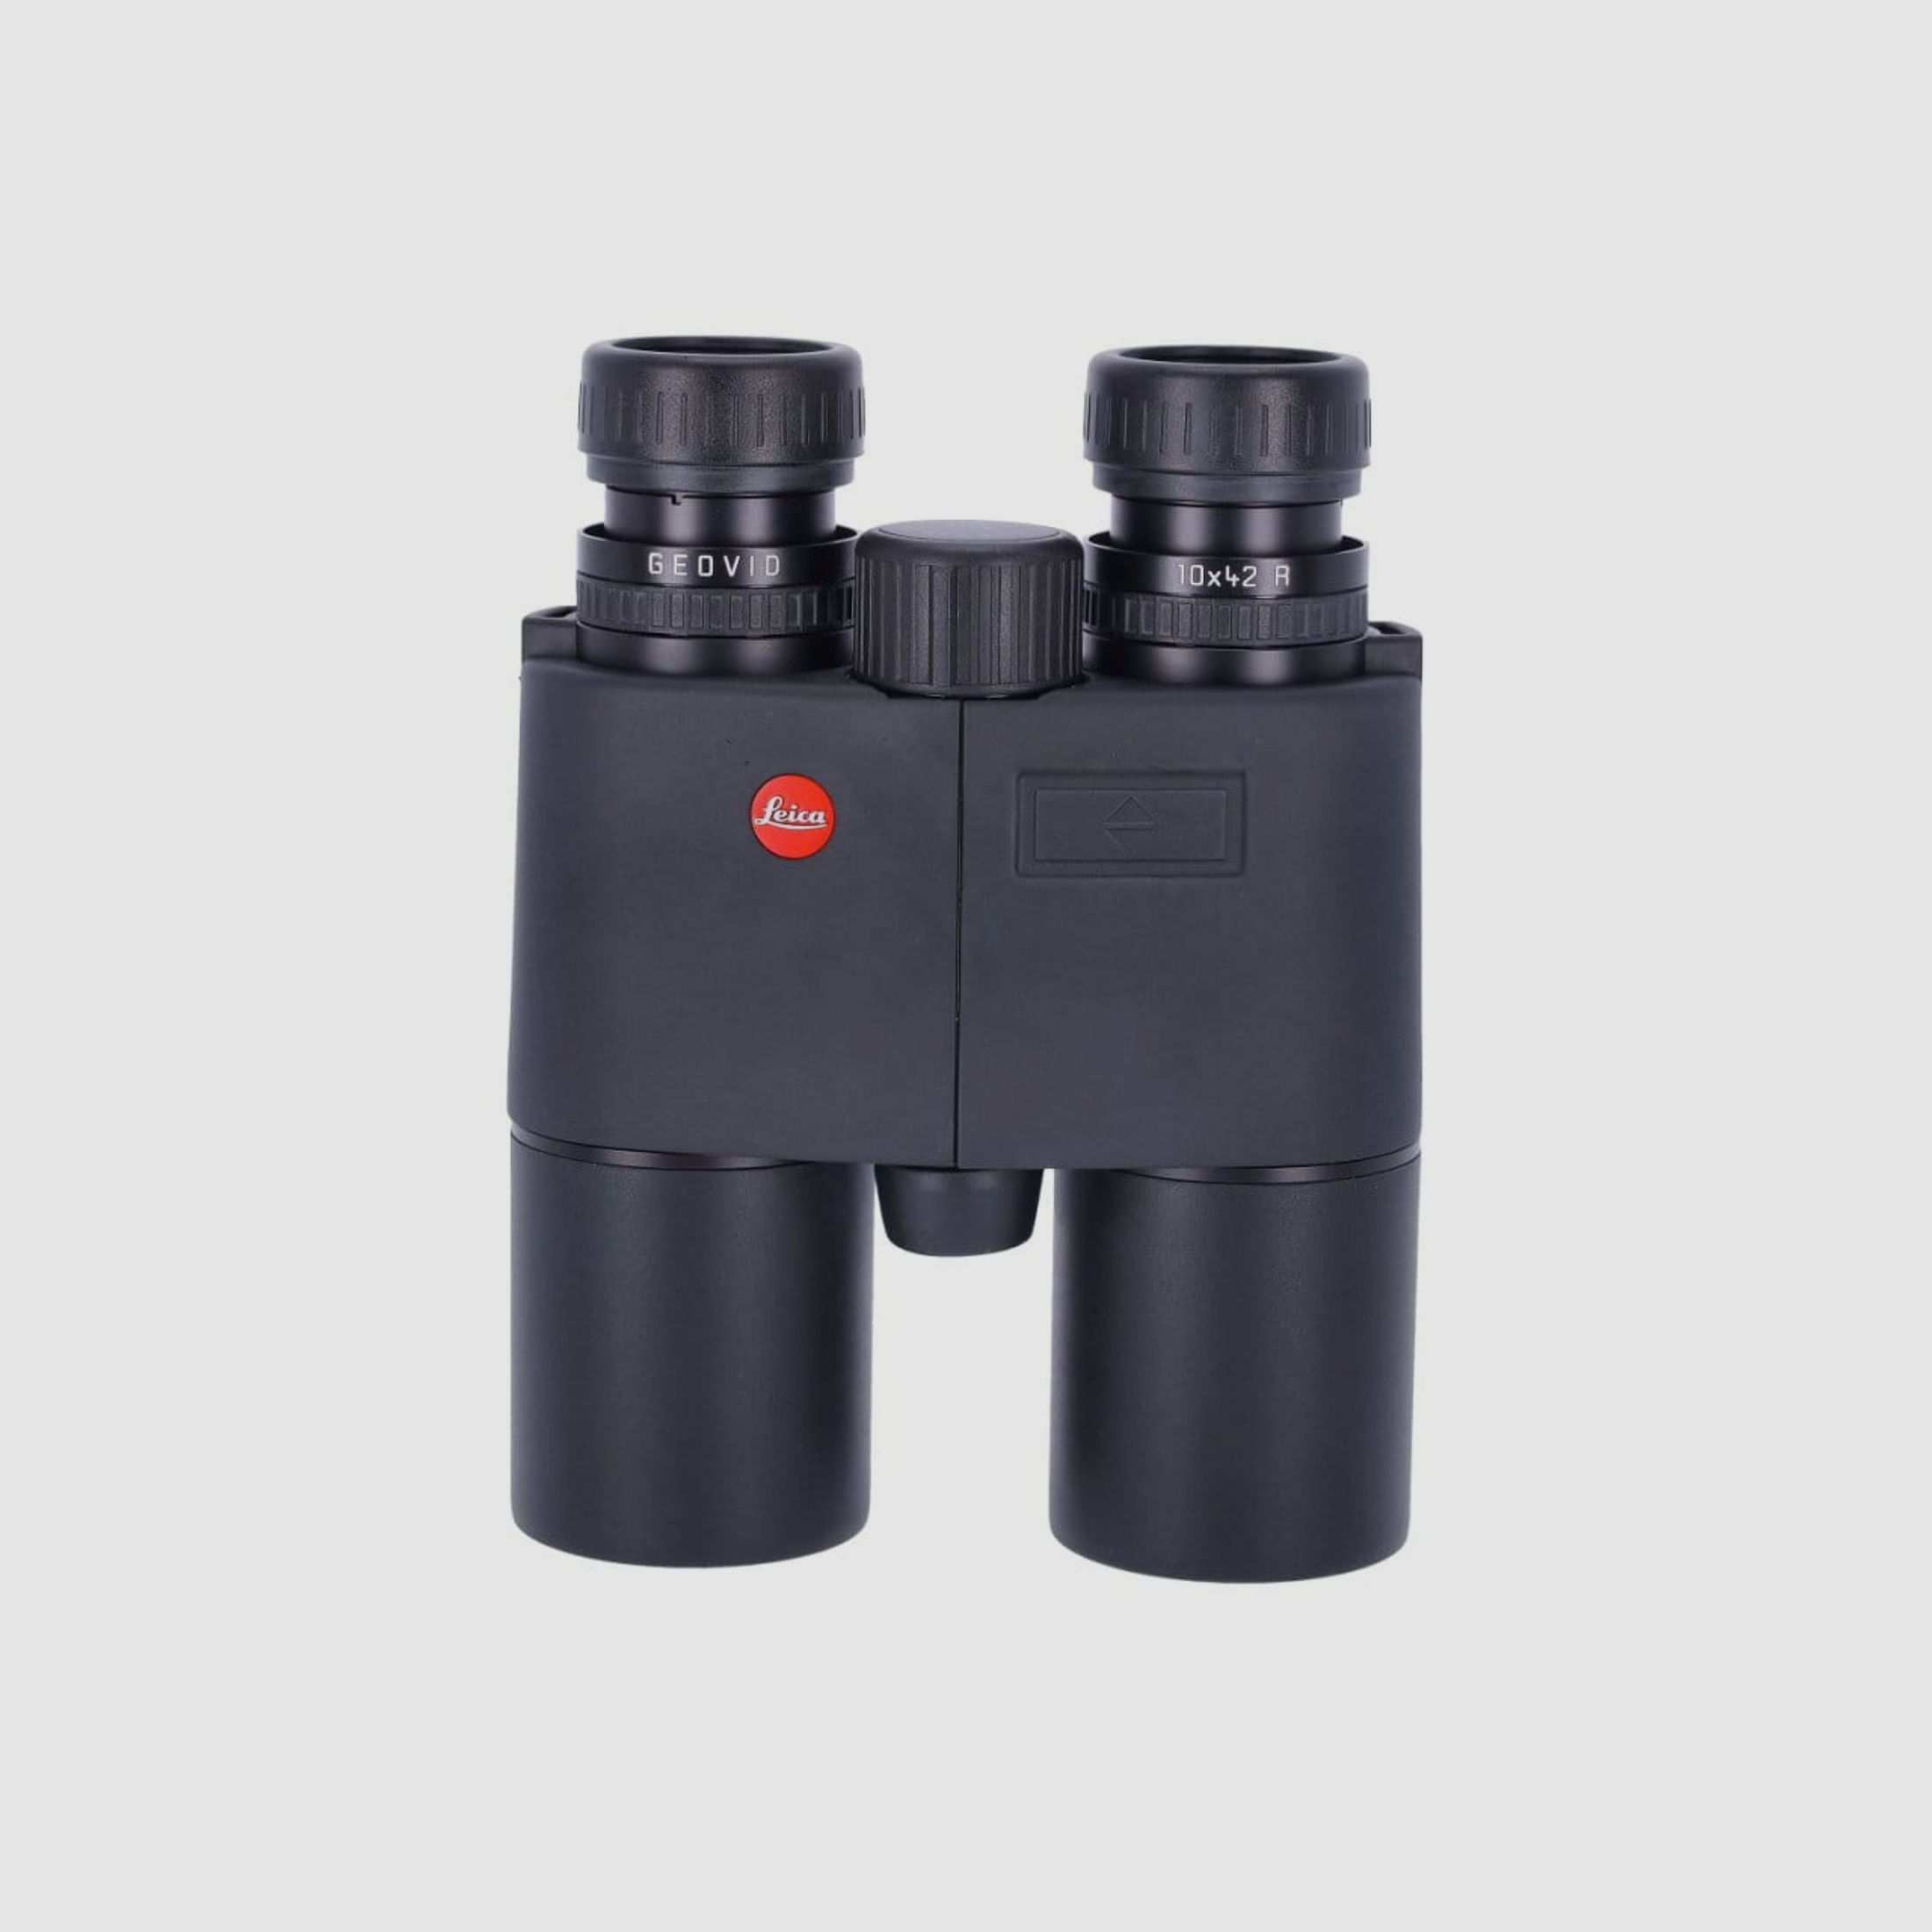 Leica GEOVID 10x42 R mit integriertem Entfernungsmesser